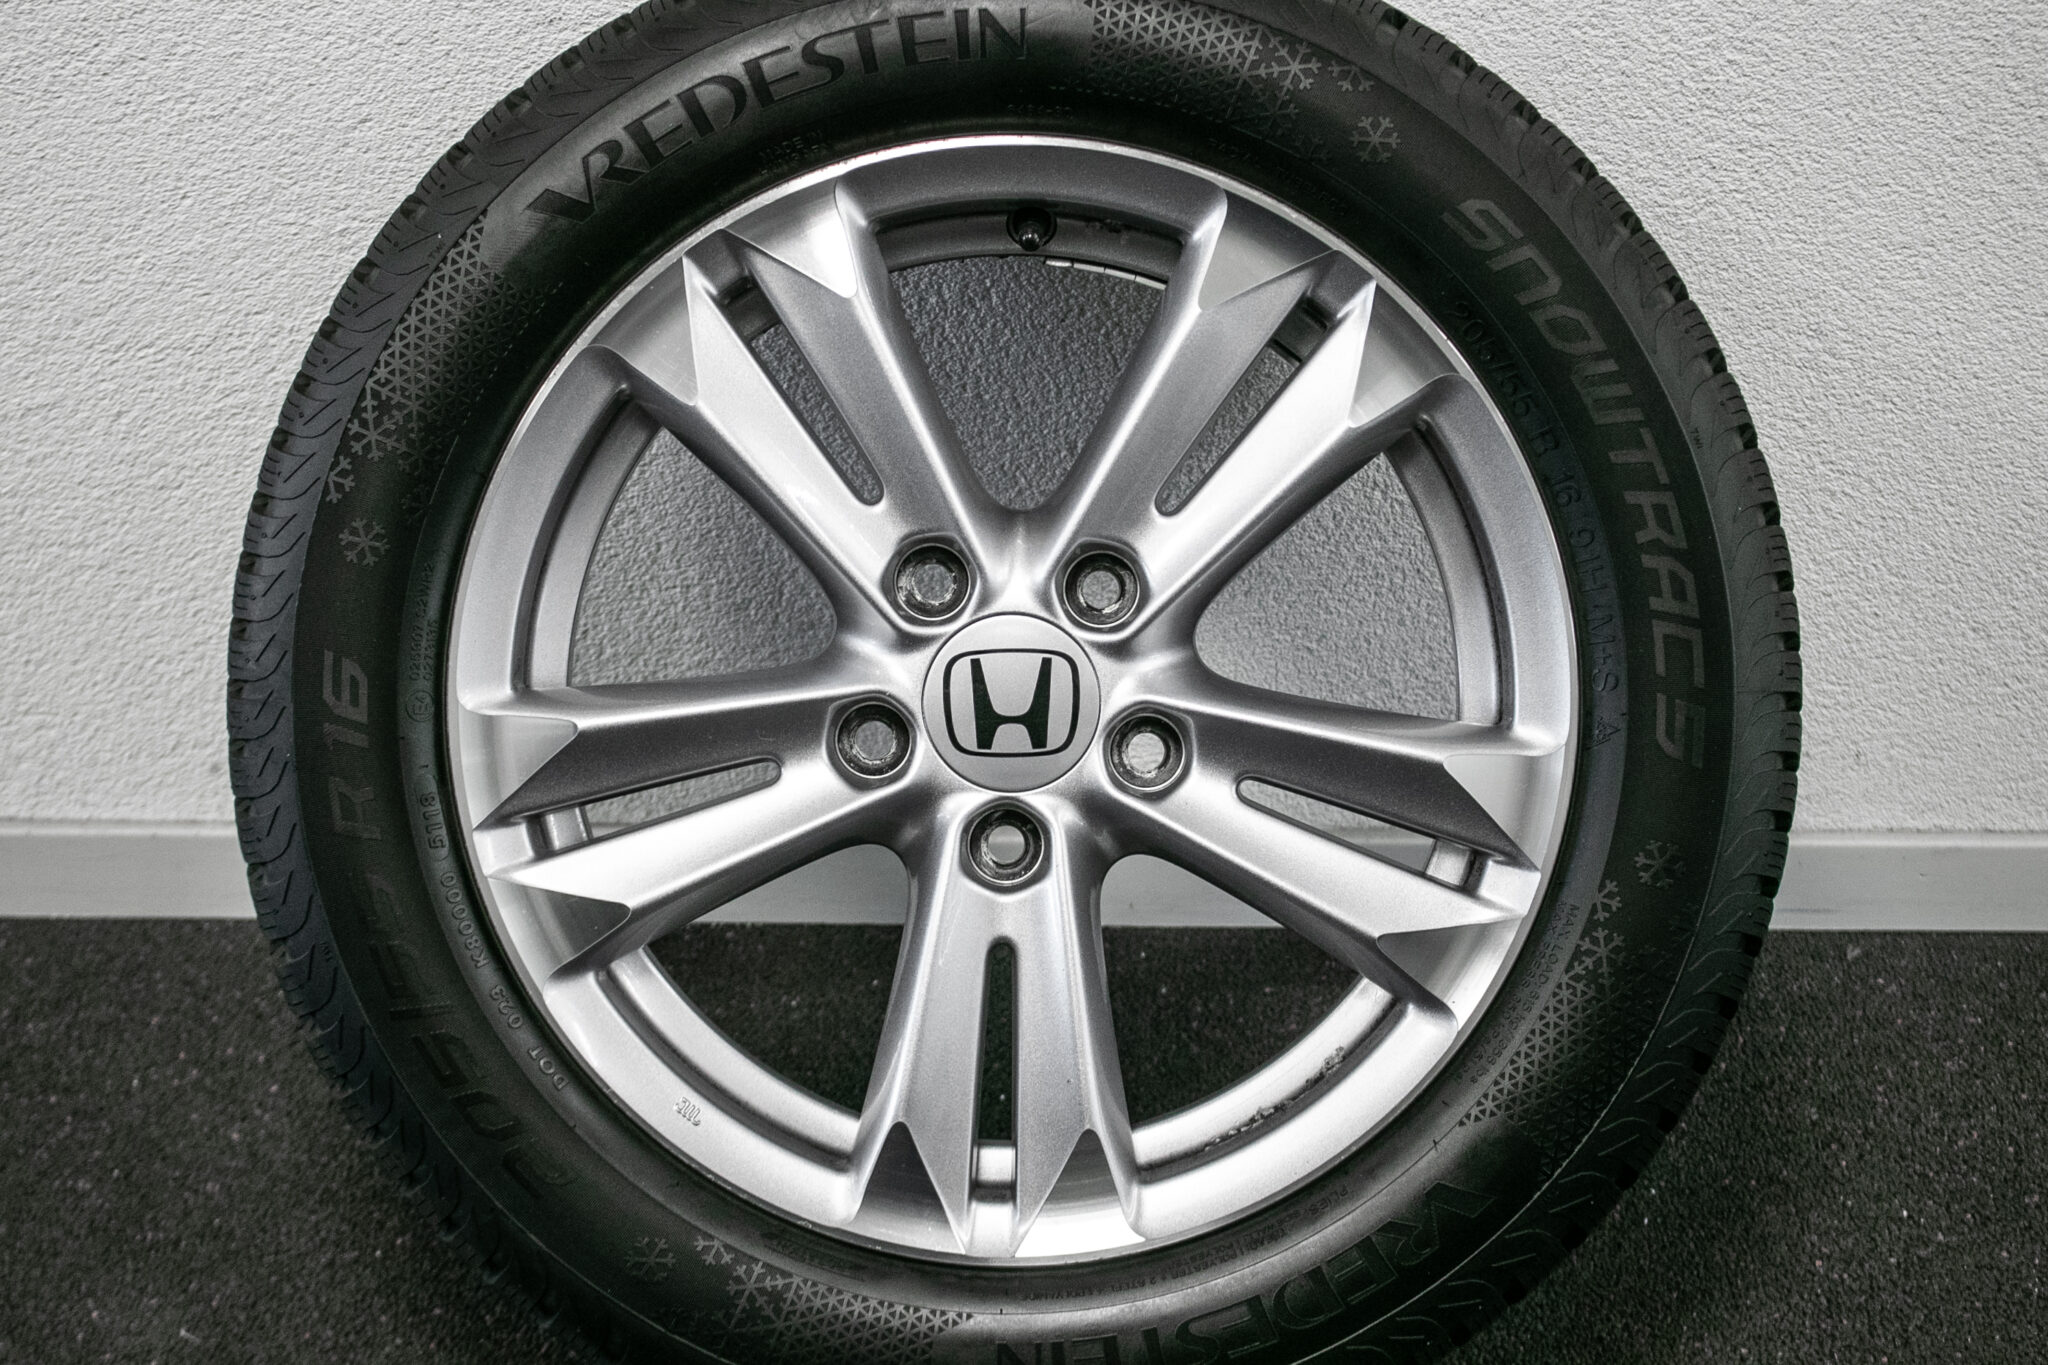 16" Winterwielen voor de Honda CR-Z 
Gebruikt. Profieldiepte: 8mm - 7.5mm